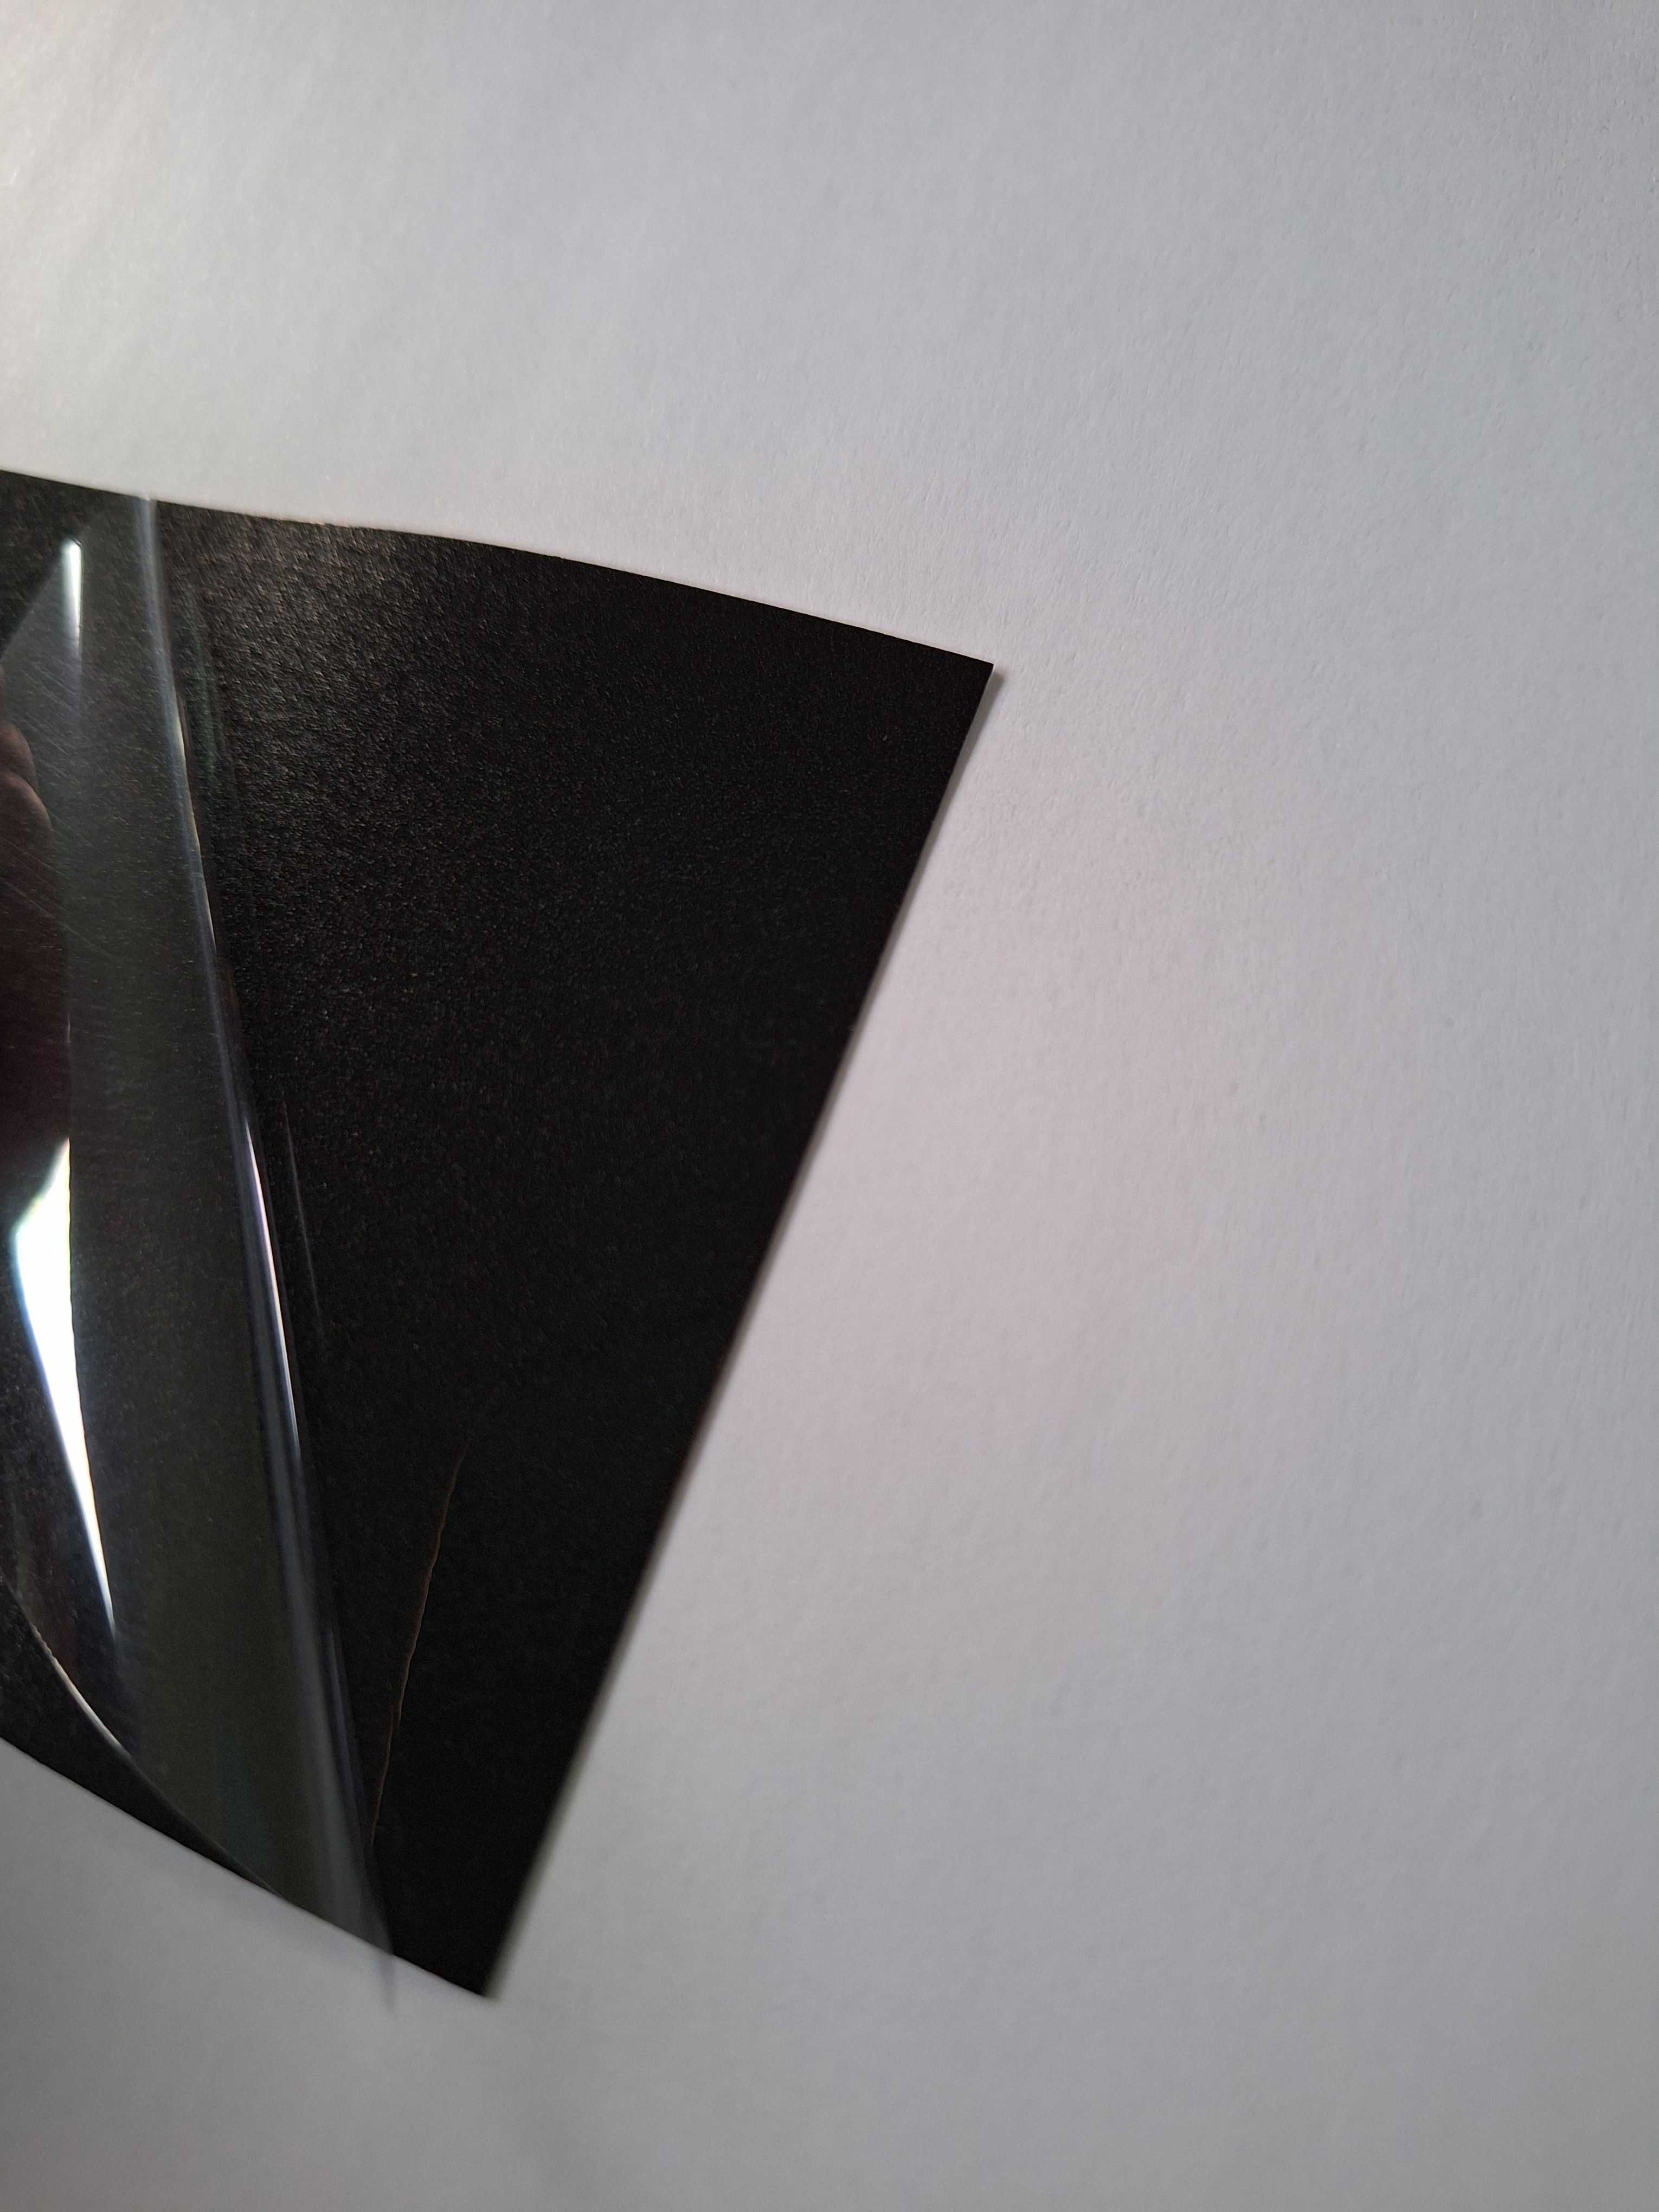 Folia czarny metallic połysk diament 17m x 152cm czarna samochodowa